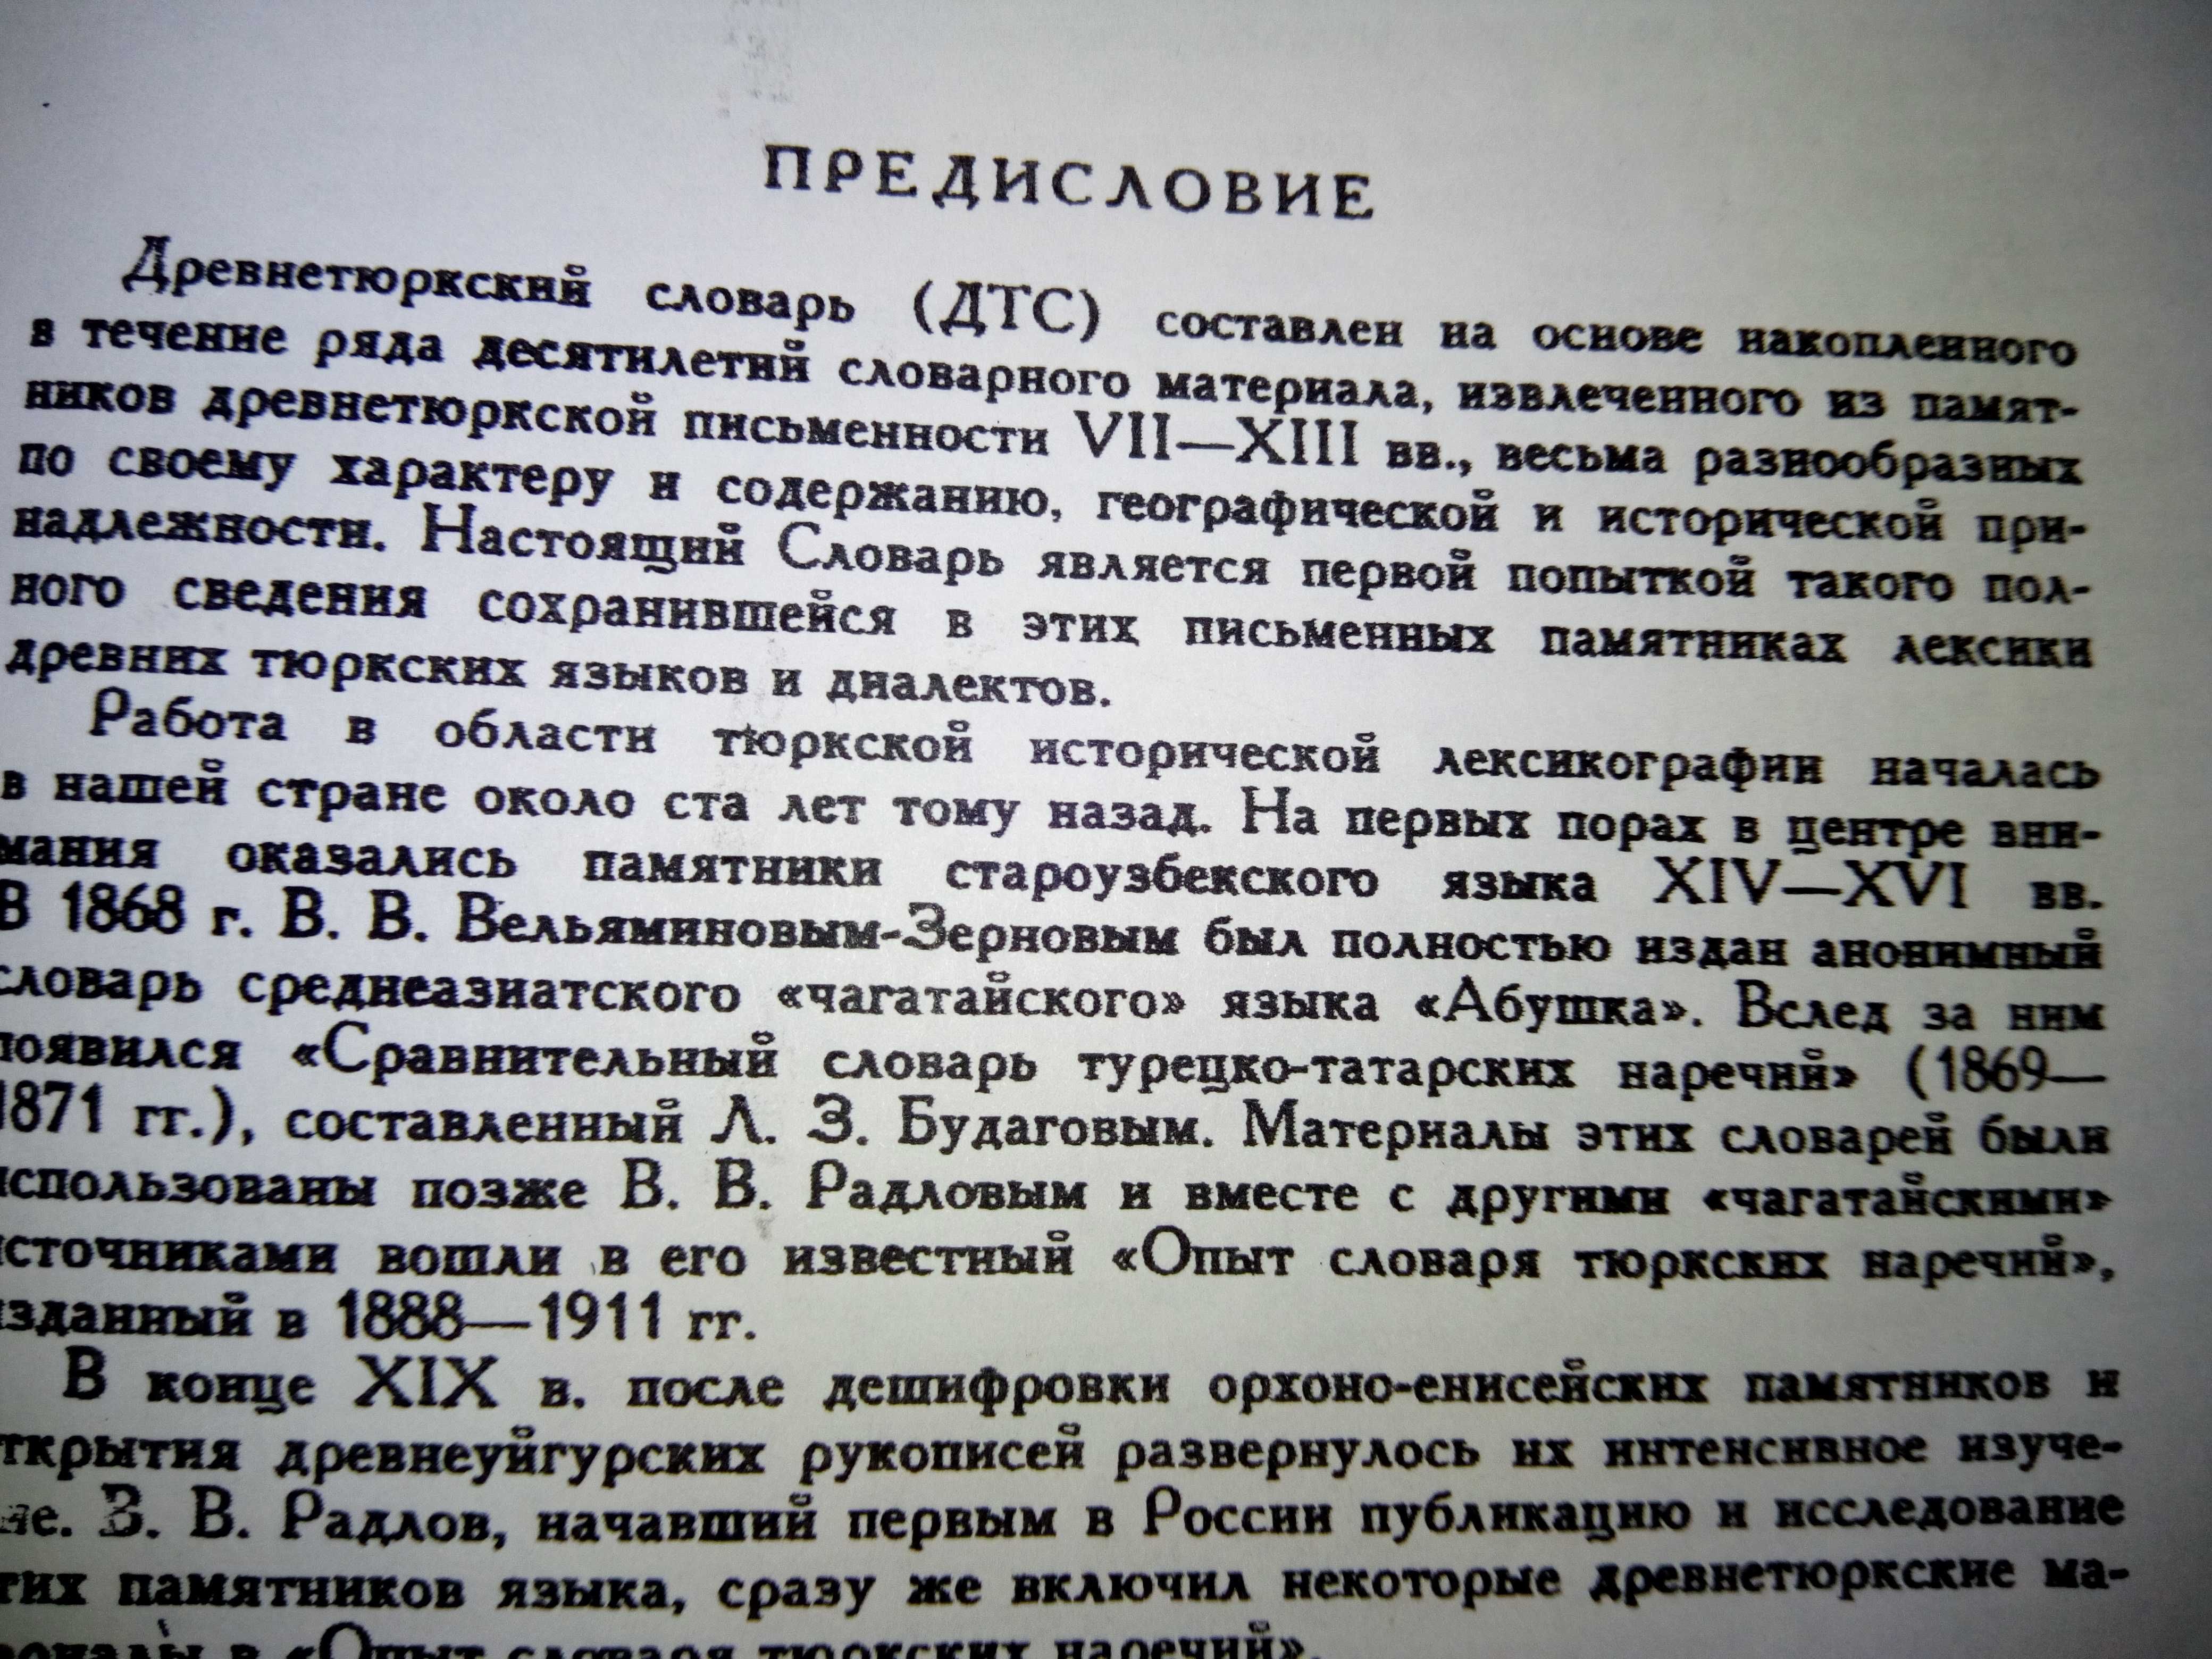 ДревнеТюркский словарь